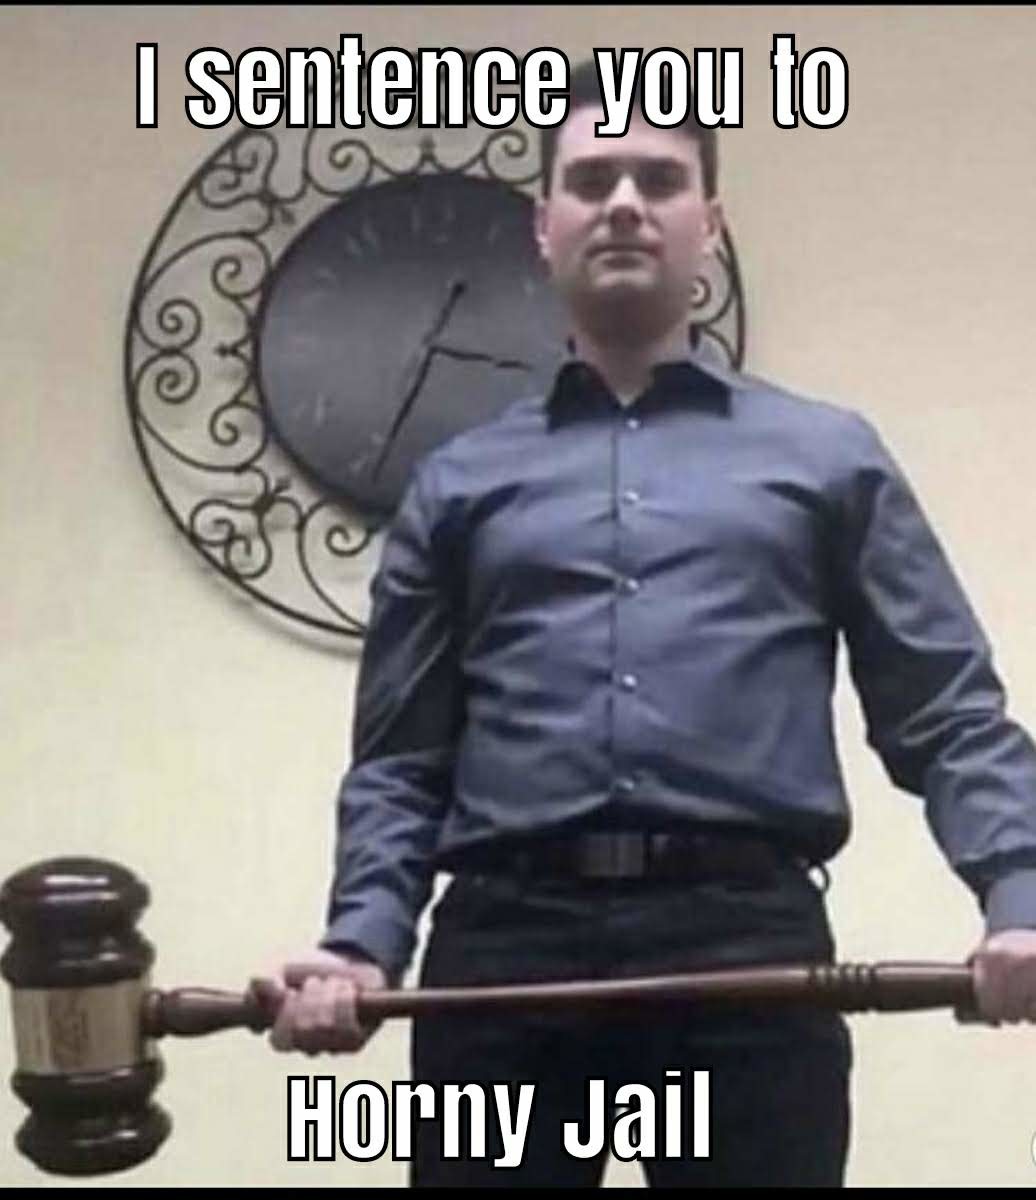 Horny jail - meme